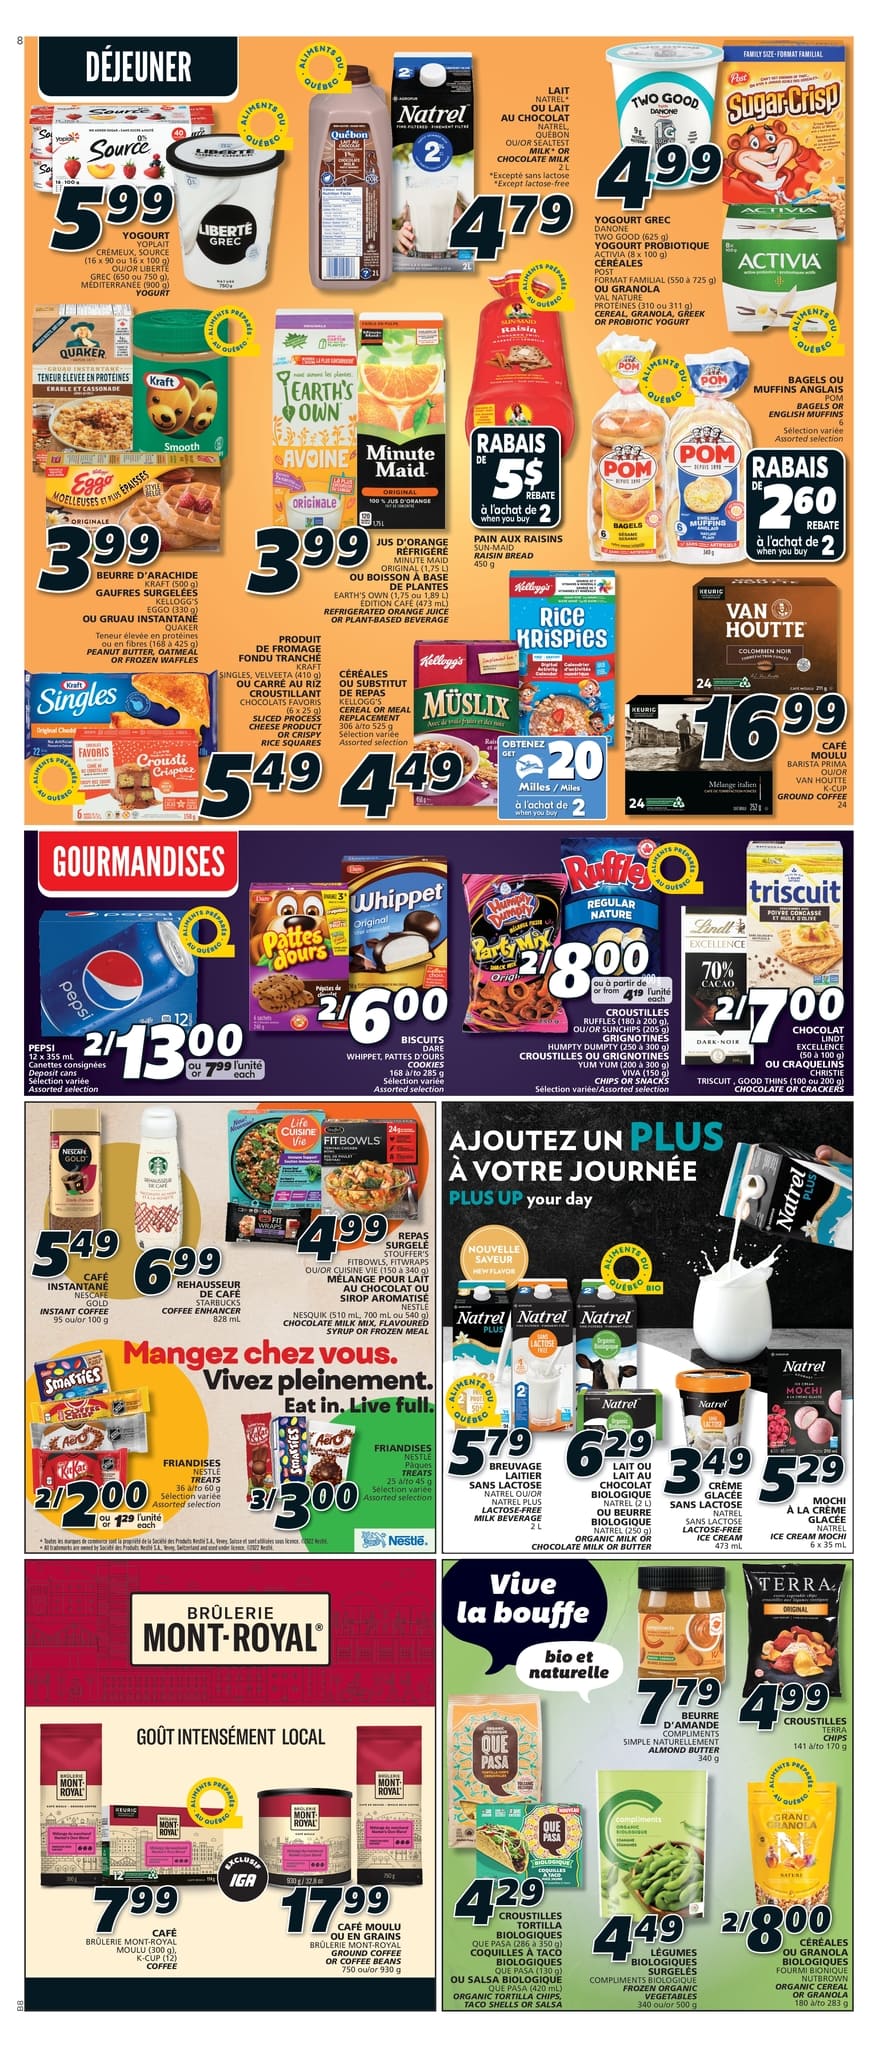 IGA - Quebec - Weekly Flyer Specials - Page 11